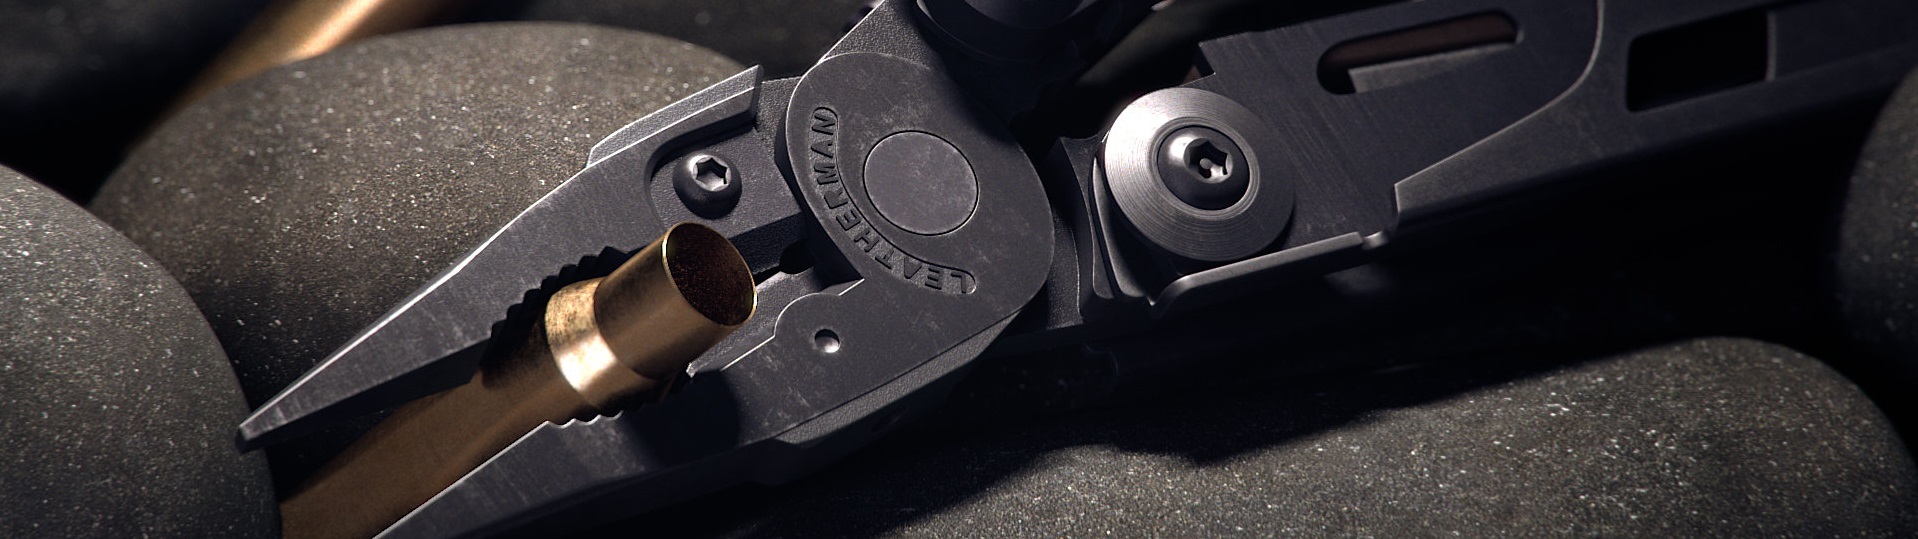 Багатофункціональний військовий інструмент Leatherman MUT Black зі знімними компонентами для швидкого та легкого настроювання інструментів для роботи зі зброєю